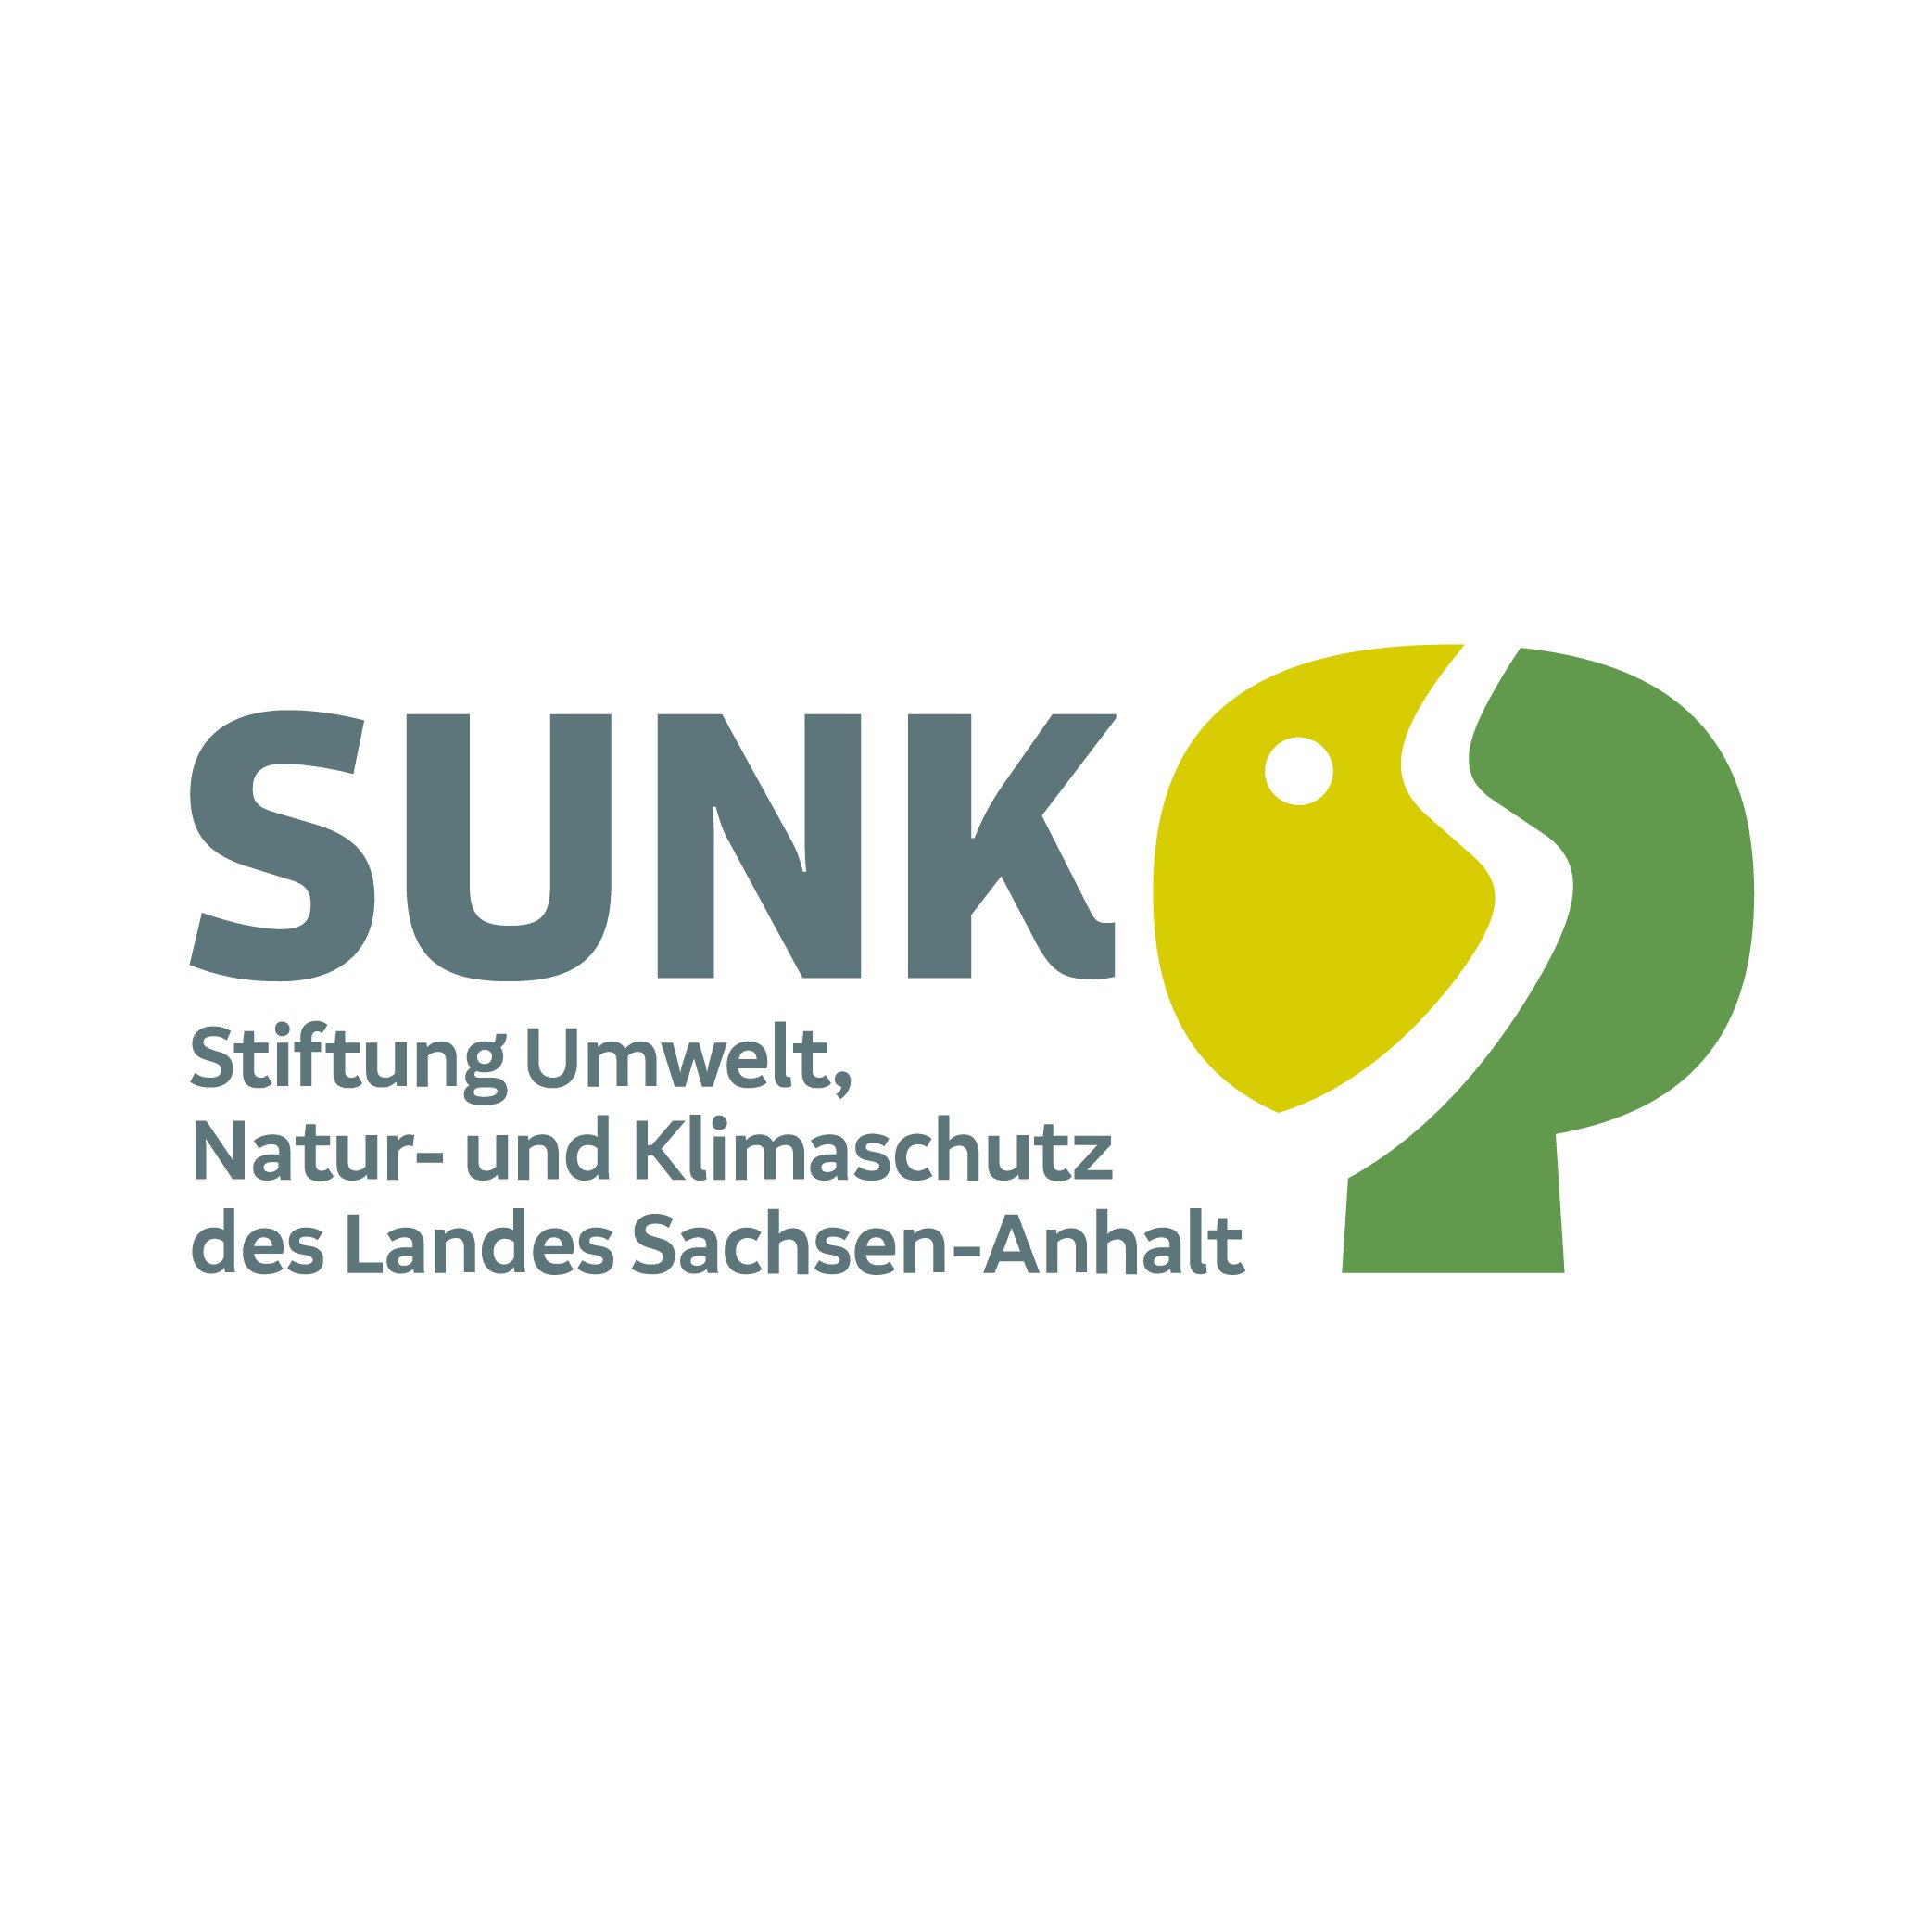 Stiftung Umwelt, Natur - und Klimaschutz des Landes Sachsen-Anhalt